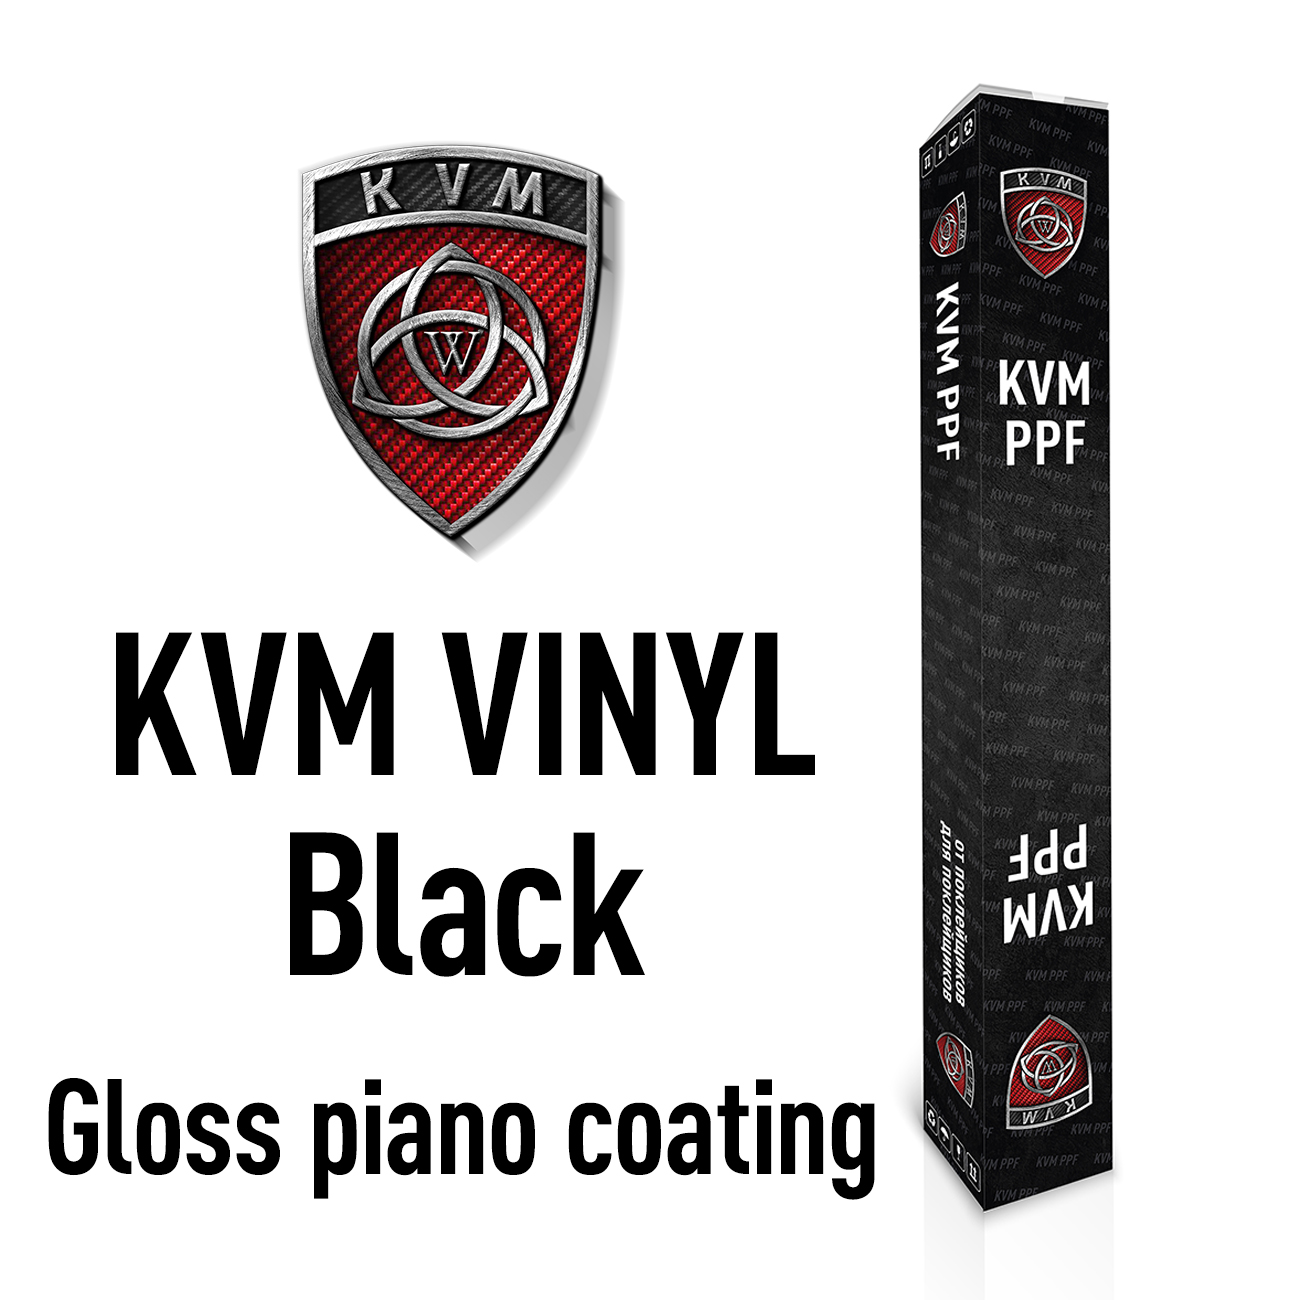 Черная виниловая пленка с защитным лаком KVM VINYL Black Gloss piano coating 1,52